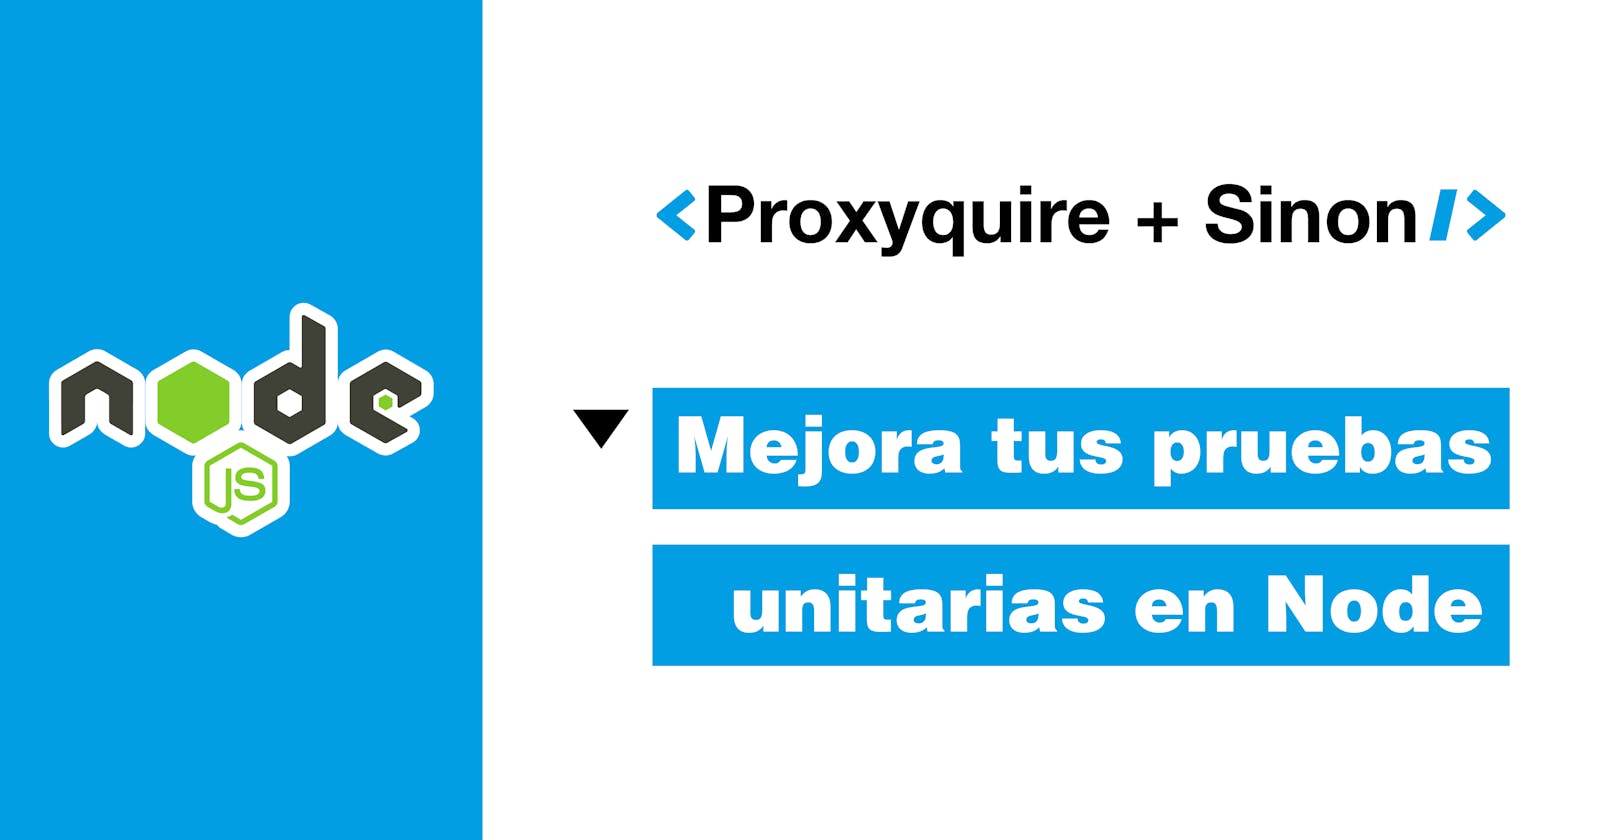 Proxyquire + Sinon